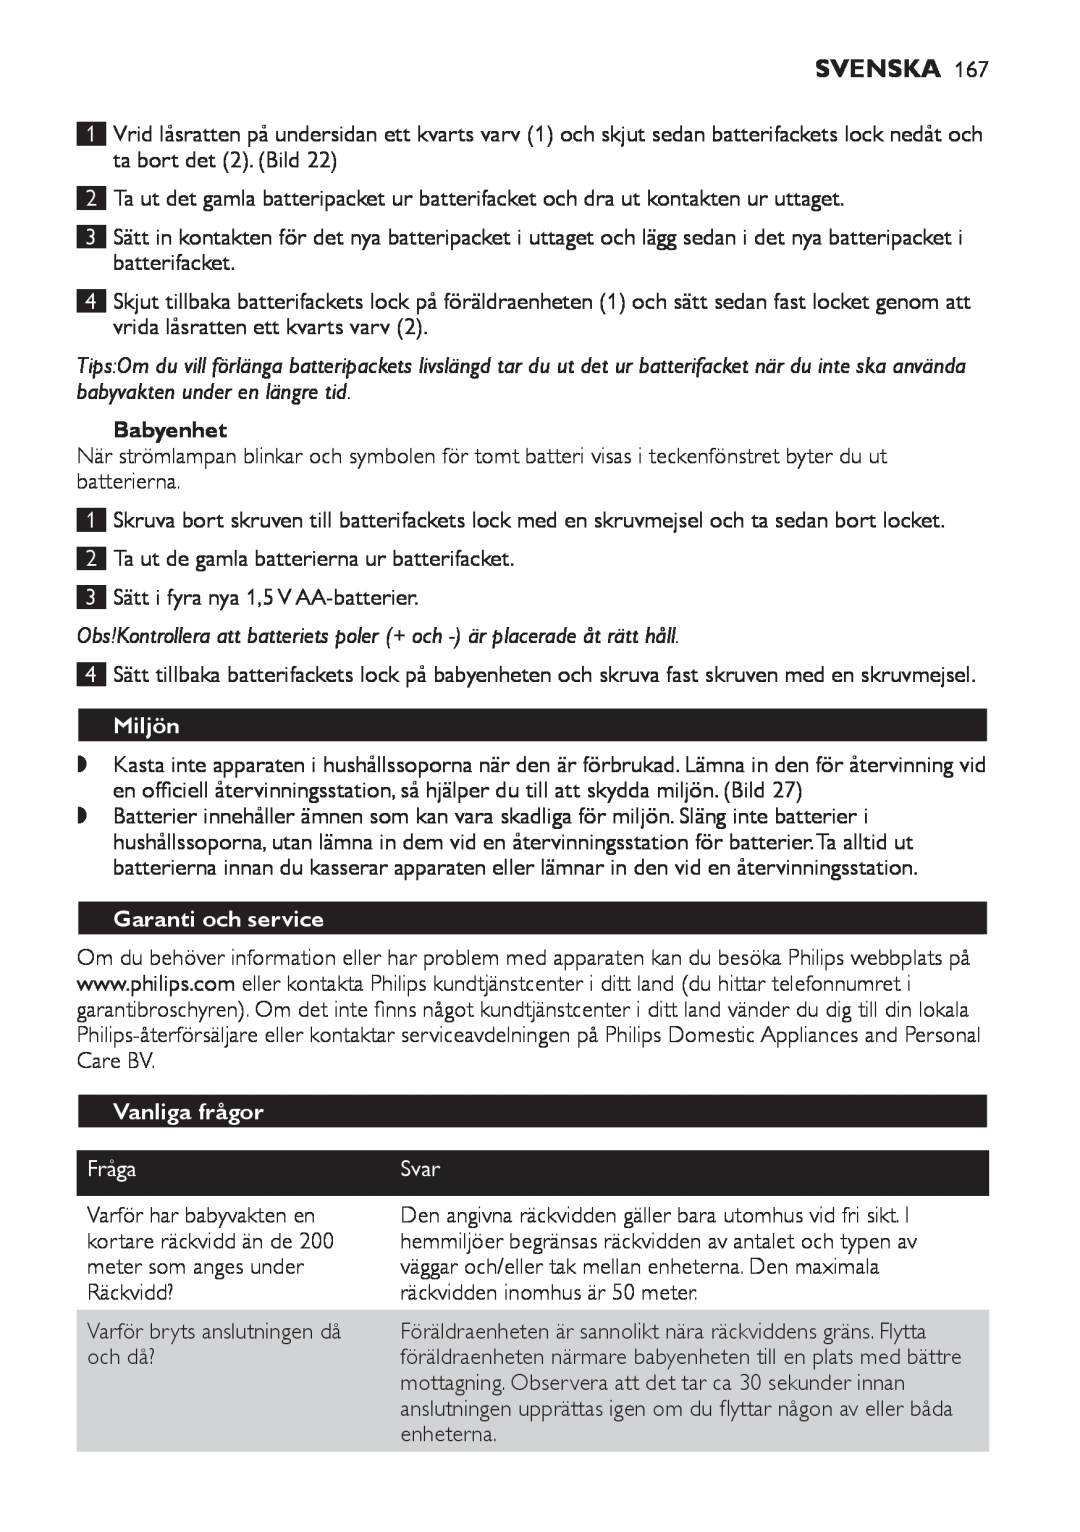 Philips SCD 469 manual Miljön, Garanti och service, Vanliga frågor, Fråga, Svenska, Babyenhet, Svar 